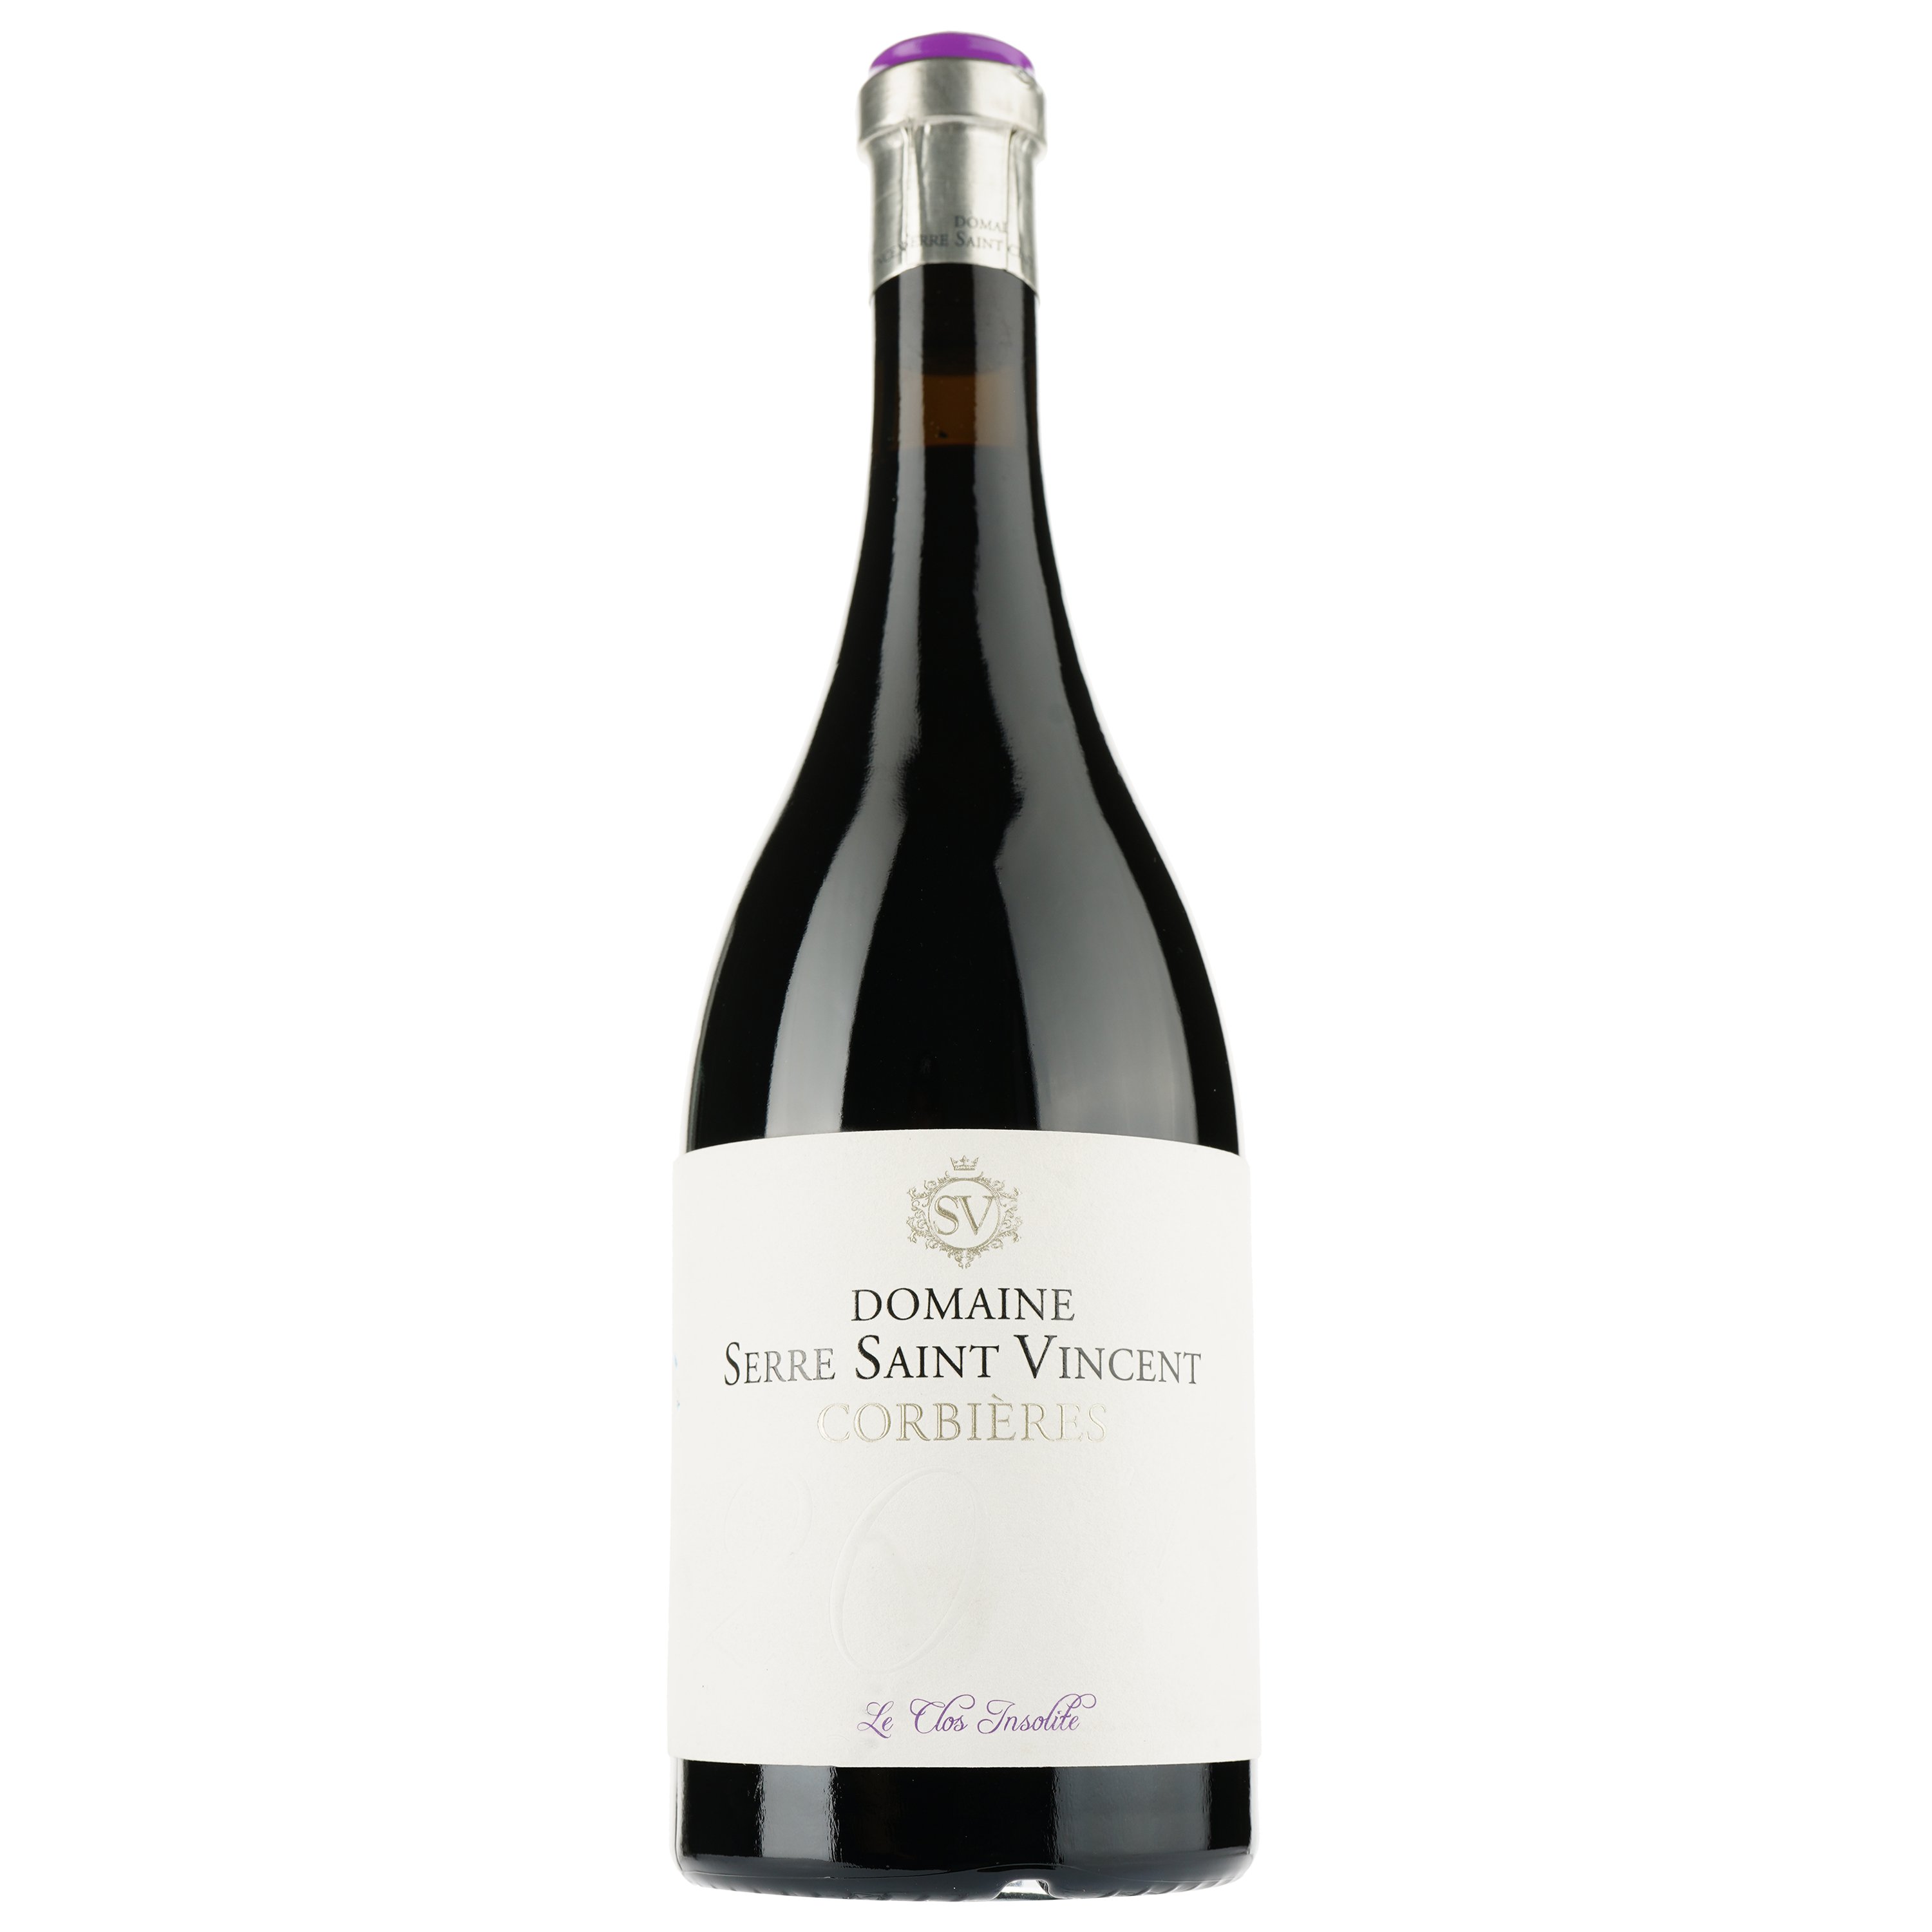 Вино Domaine Serre Saint Vincent Le Clos Insolite 2016 AOP Corbieres, красное, сухое, 0,75 л - фото 1